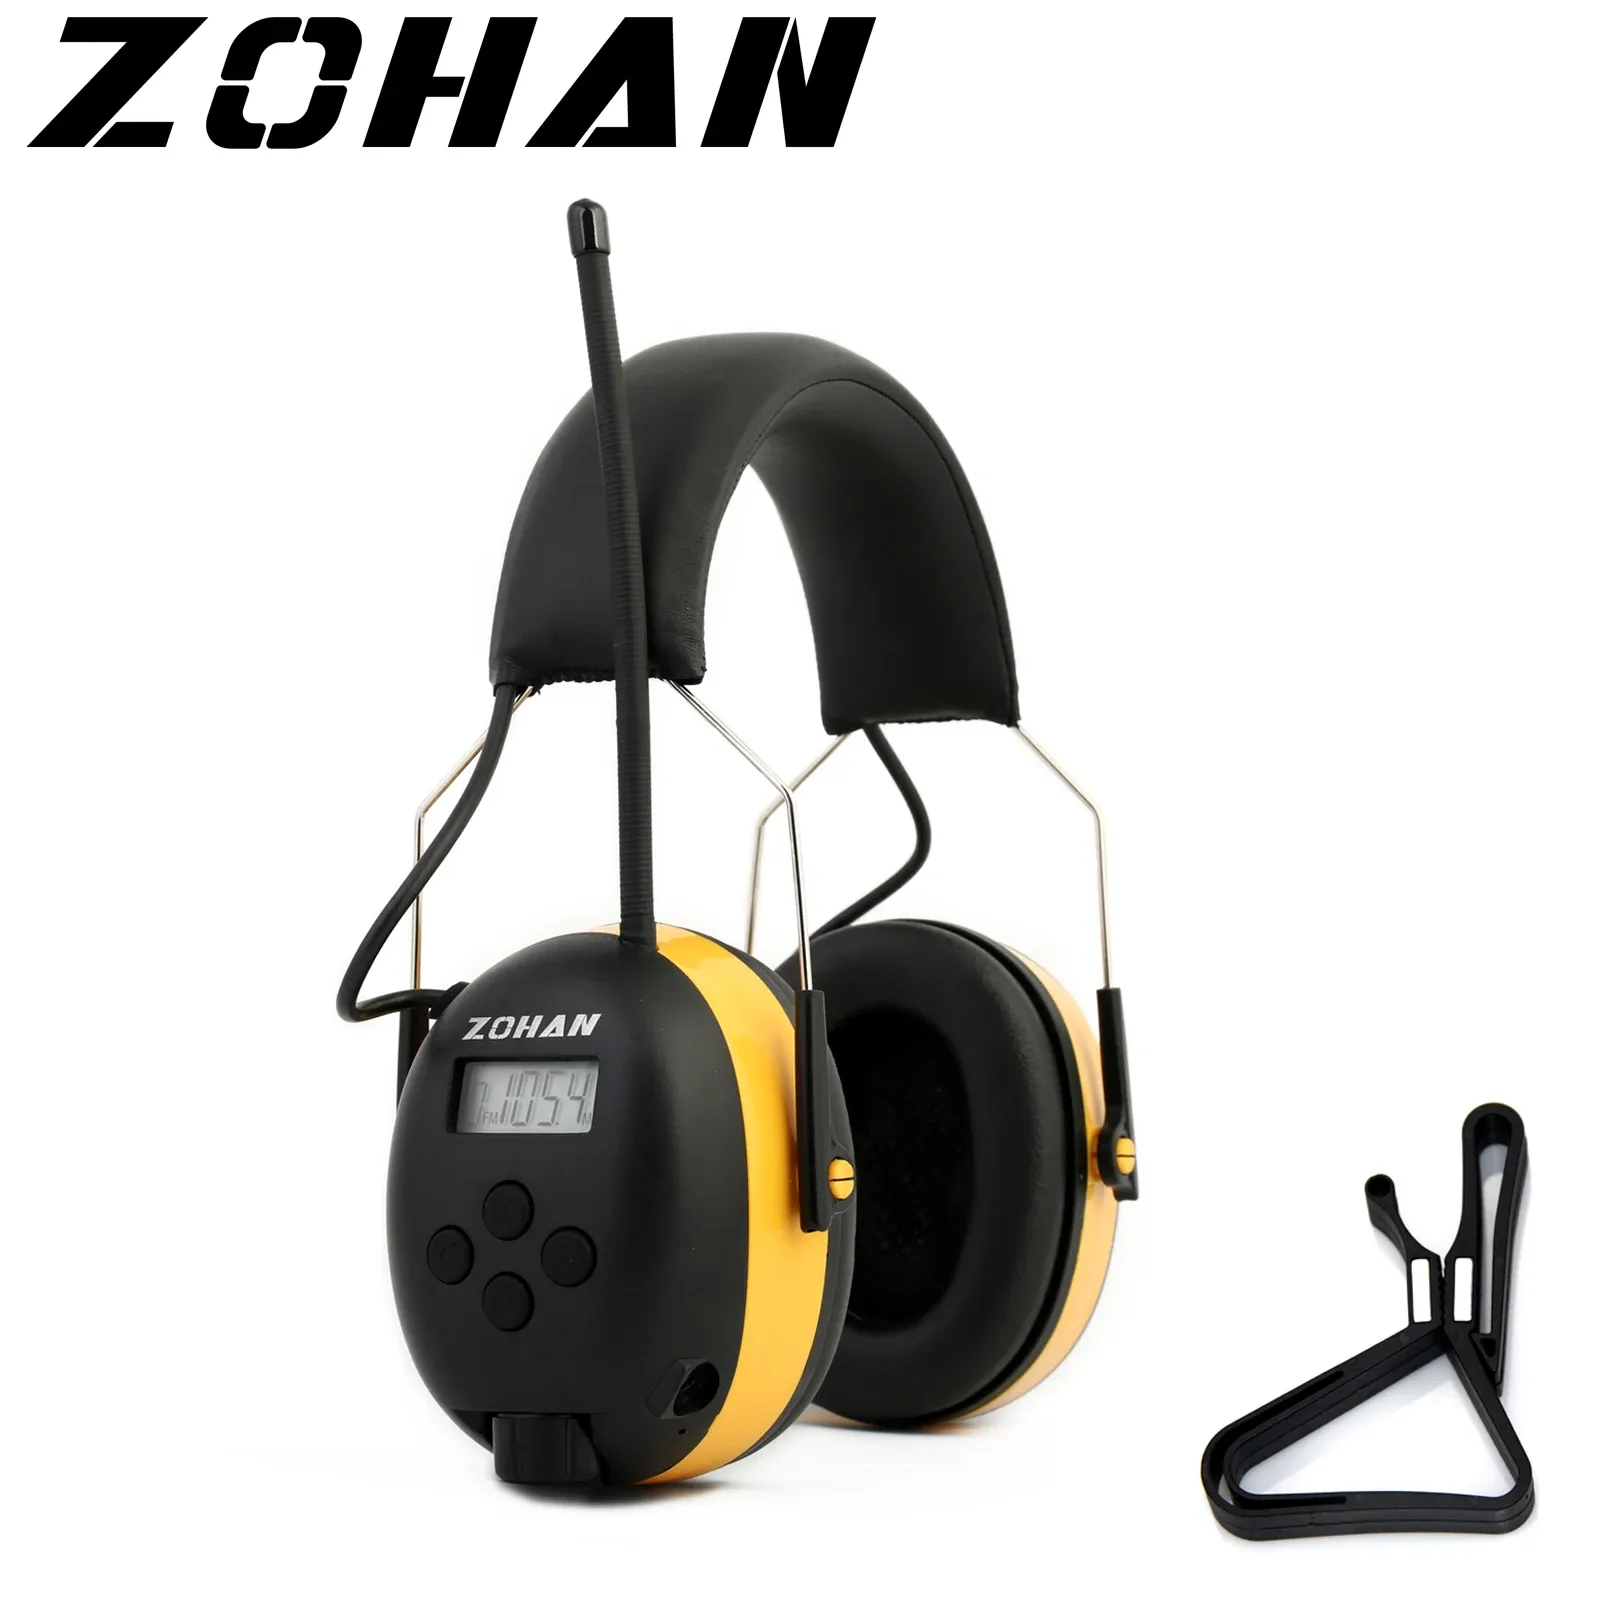 Radio ZOHAN Cache-oreilles radio stéréo numérique AM/FM NRR 24 dB Protection auditive pour tonte Protection auditive professionnelle Casque radio